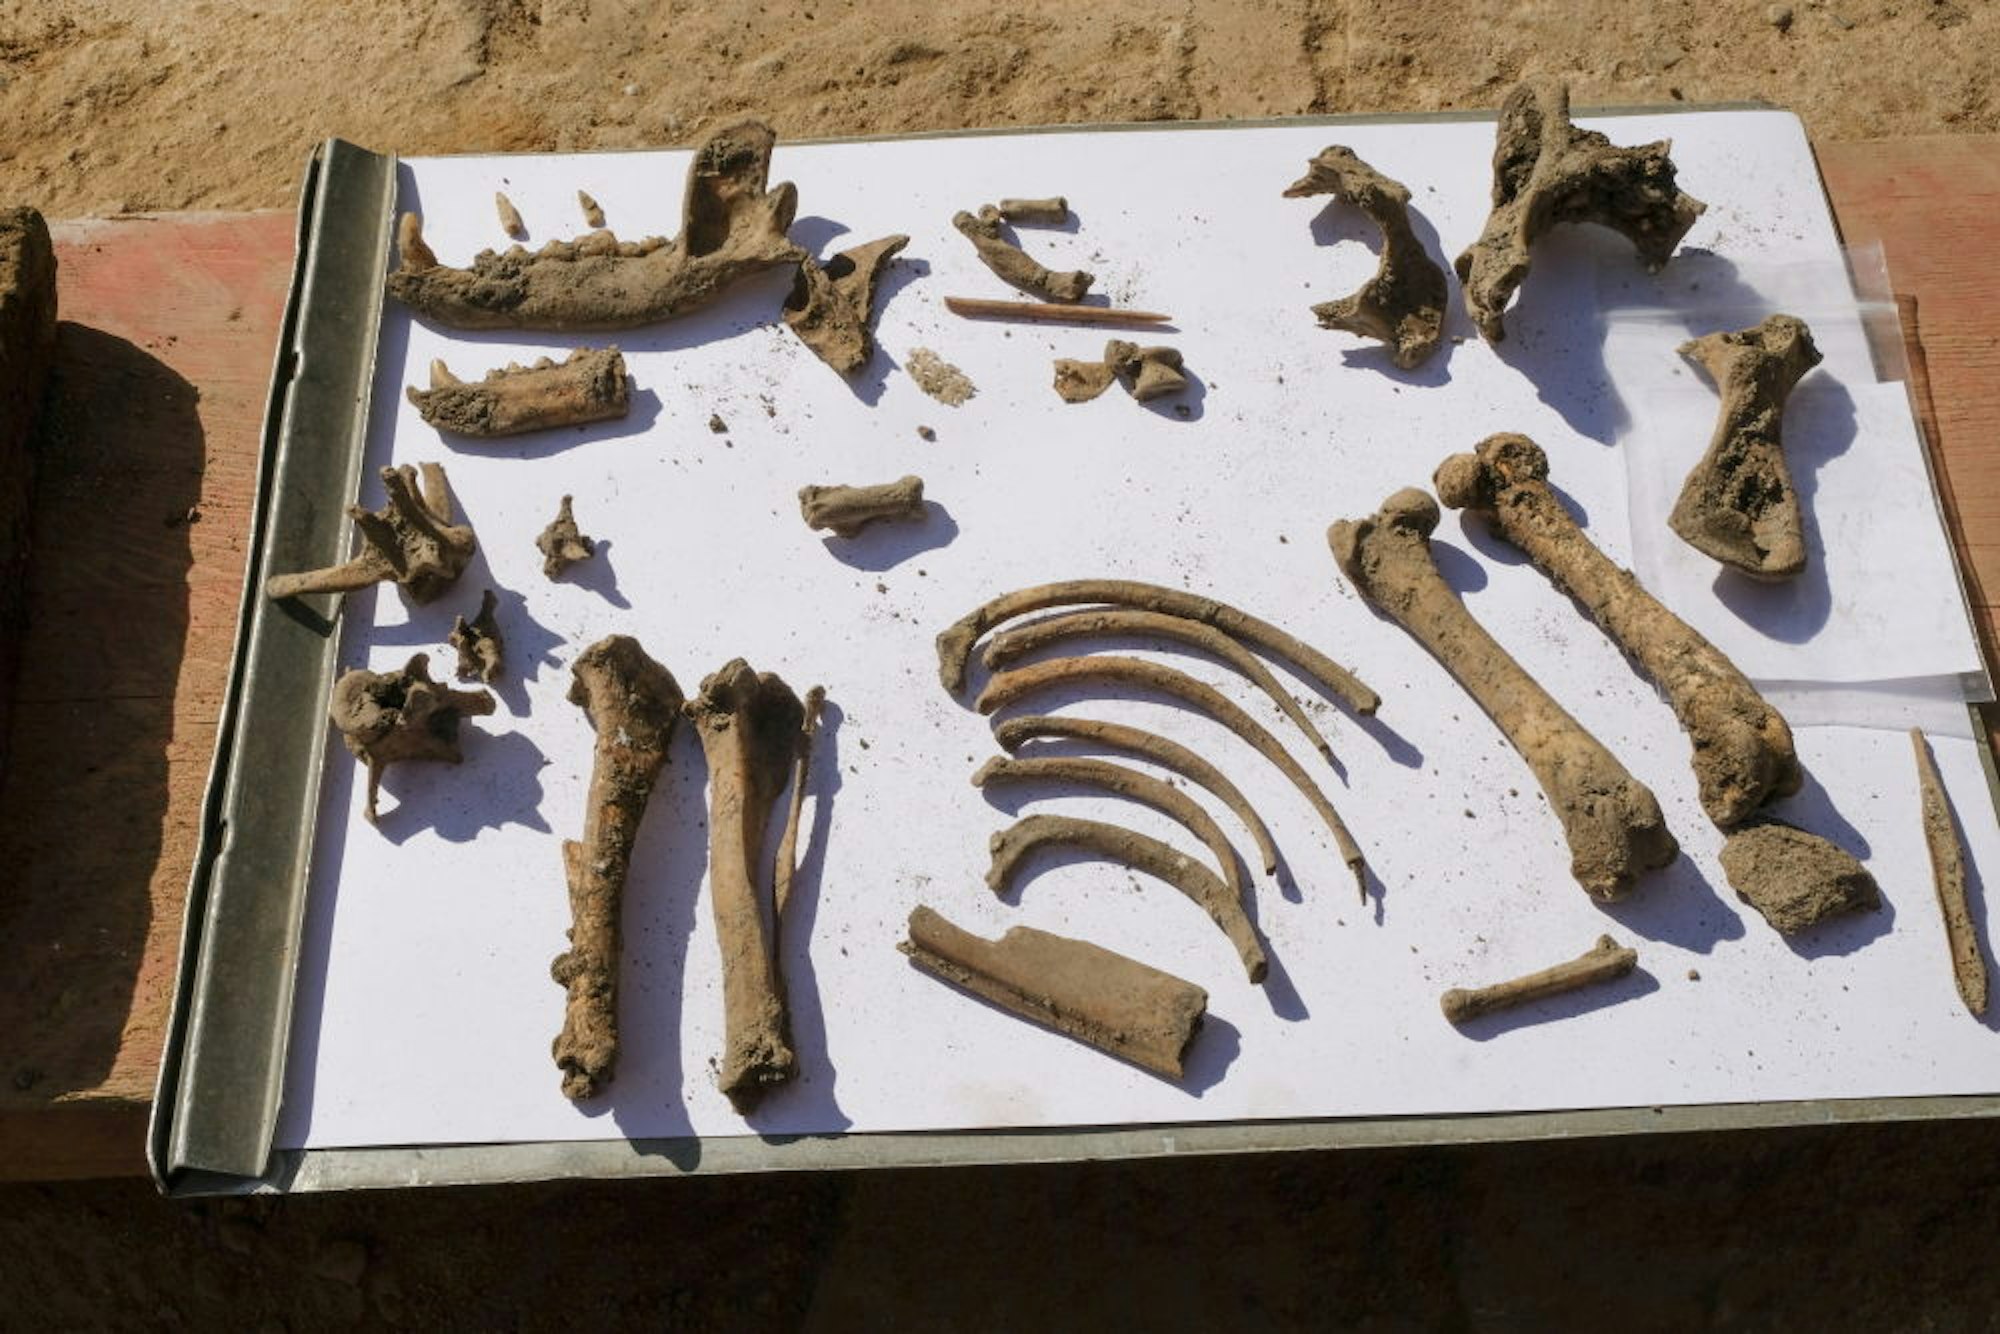 Unlösbares Geheimnis: Wie kam der Hund, dessen Knochen gefunden wurden, vor gut 1700 Jahren in den Keller der Römer?